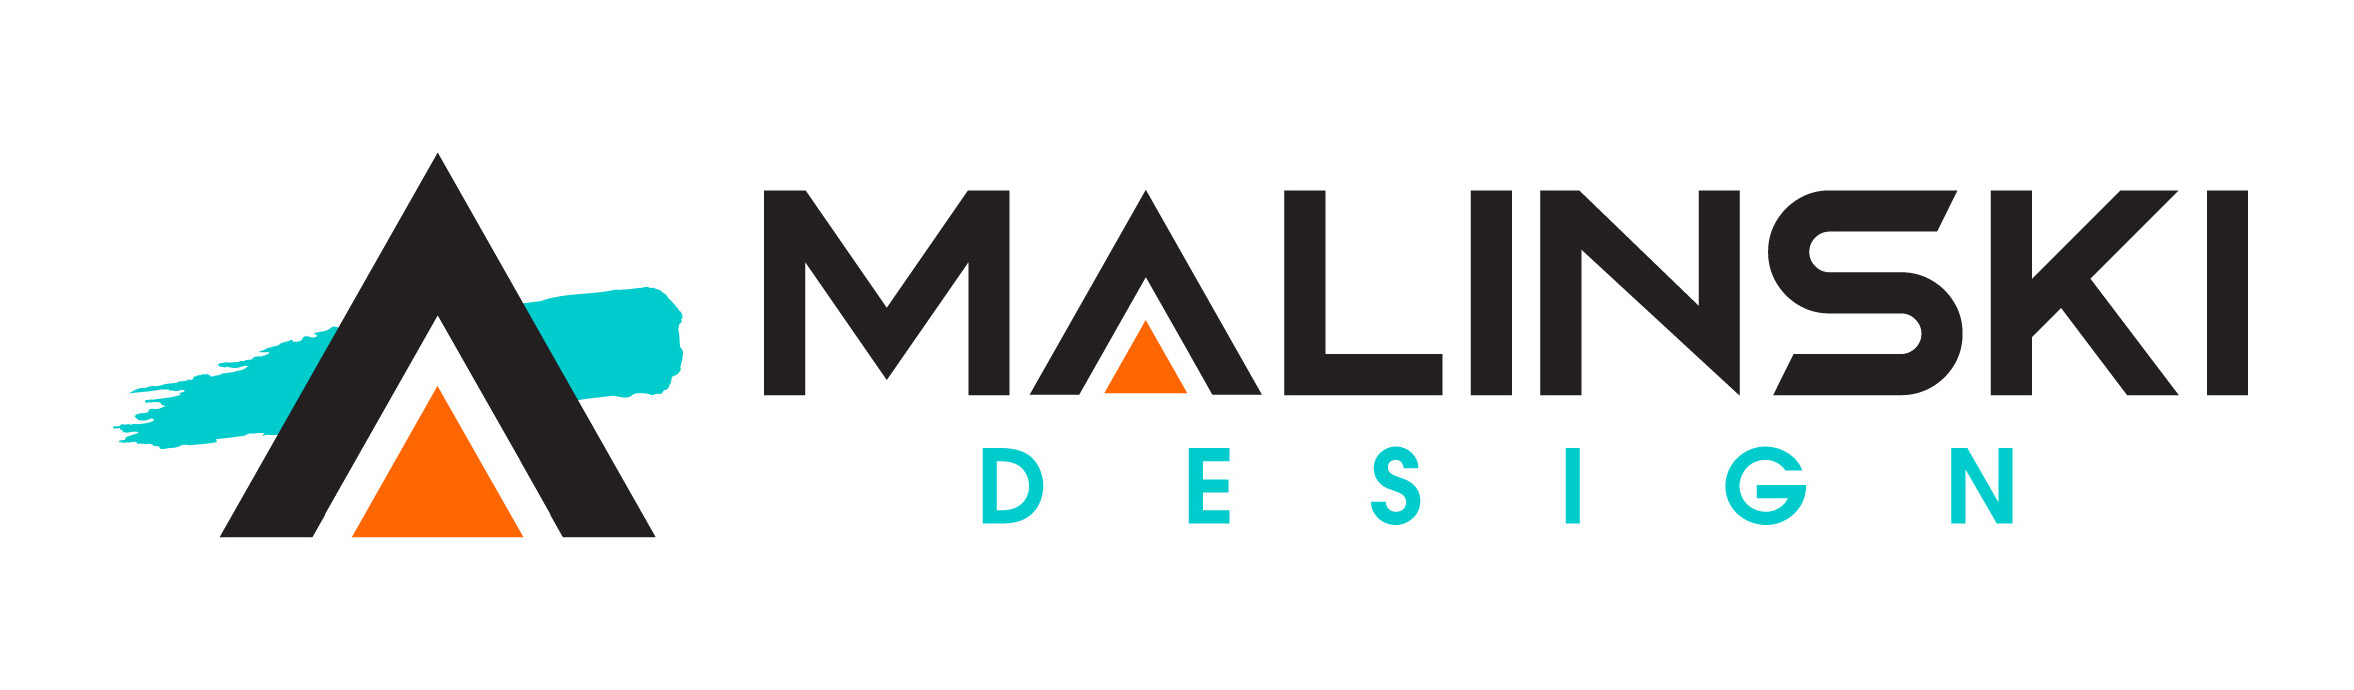 Malinski Design